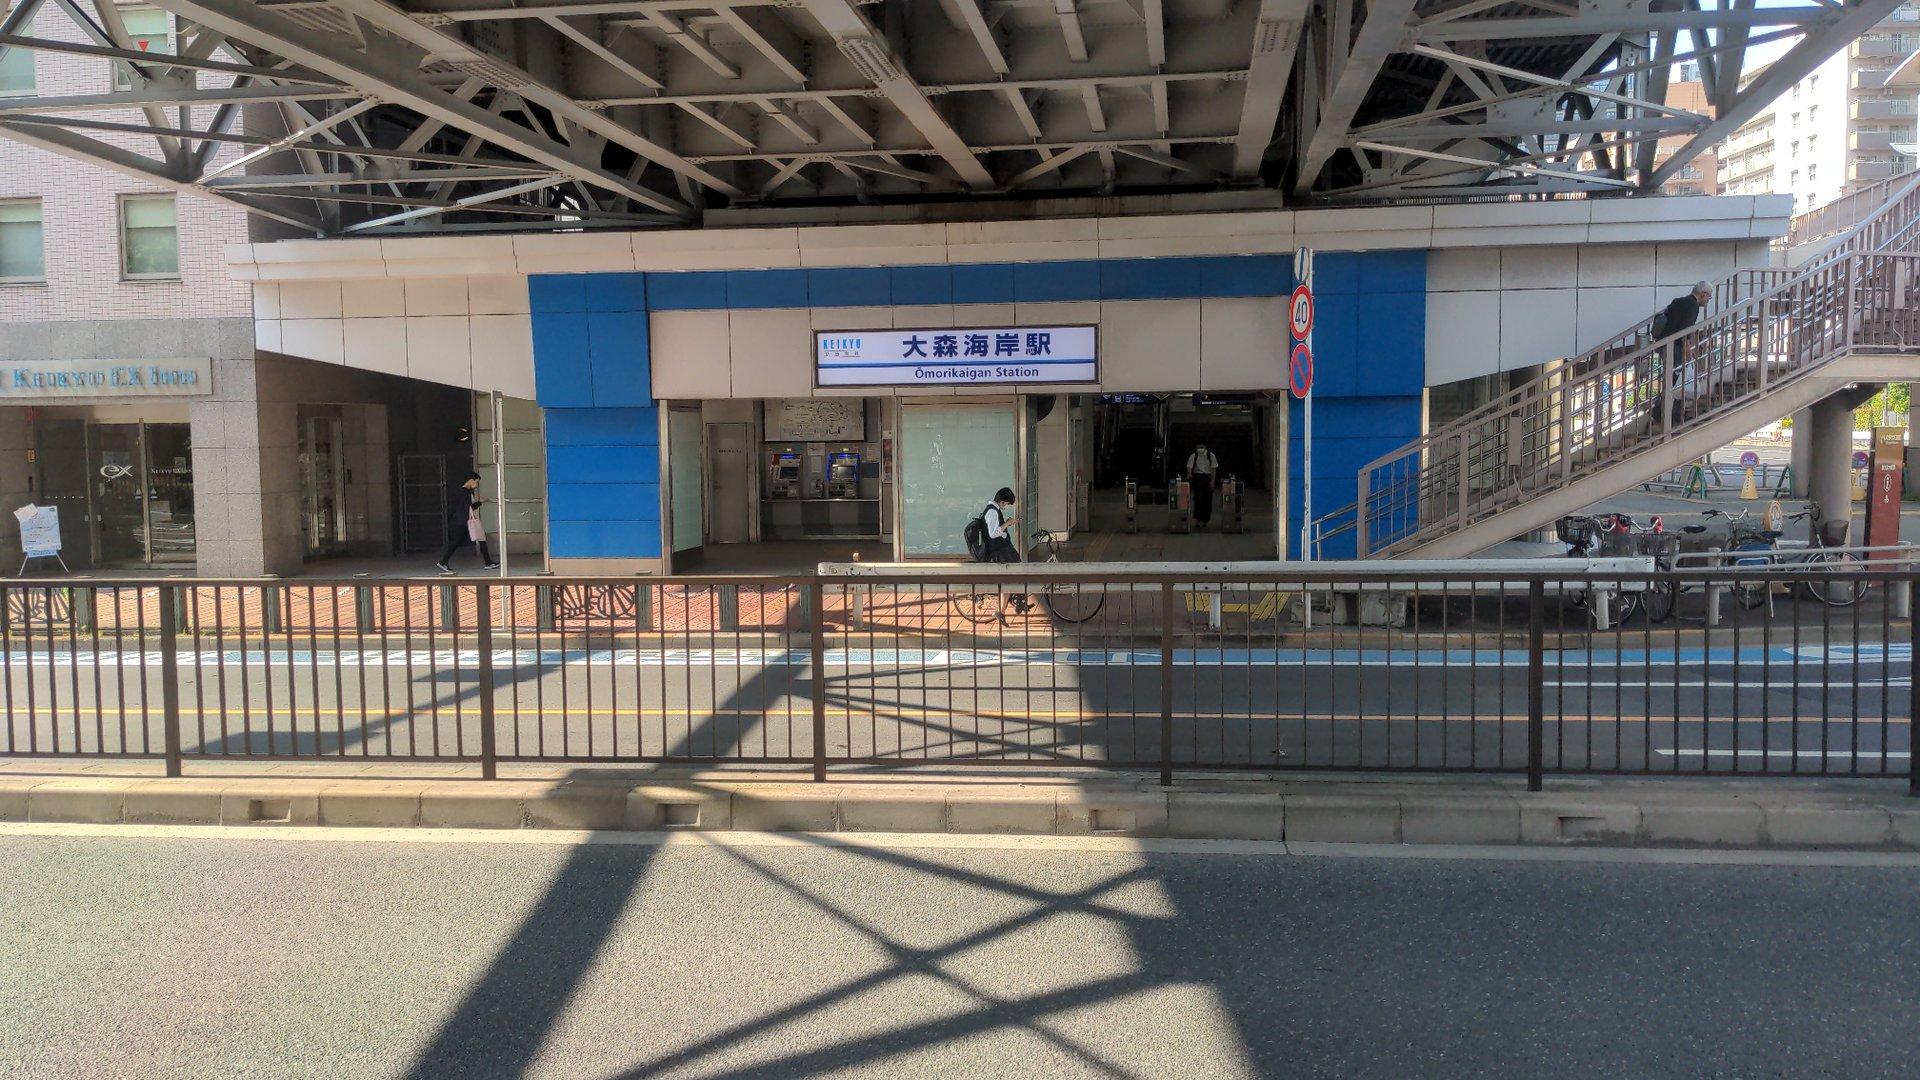 Ōmorikaigan Station (大森海岸駅 （おおもりかいがん）)